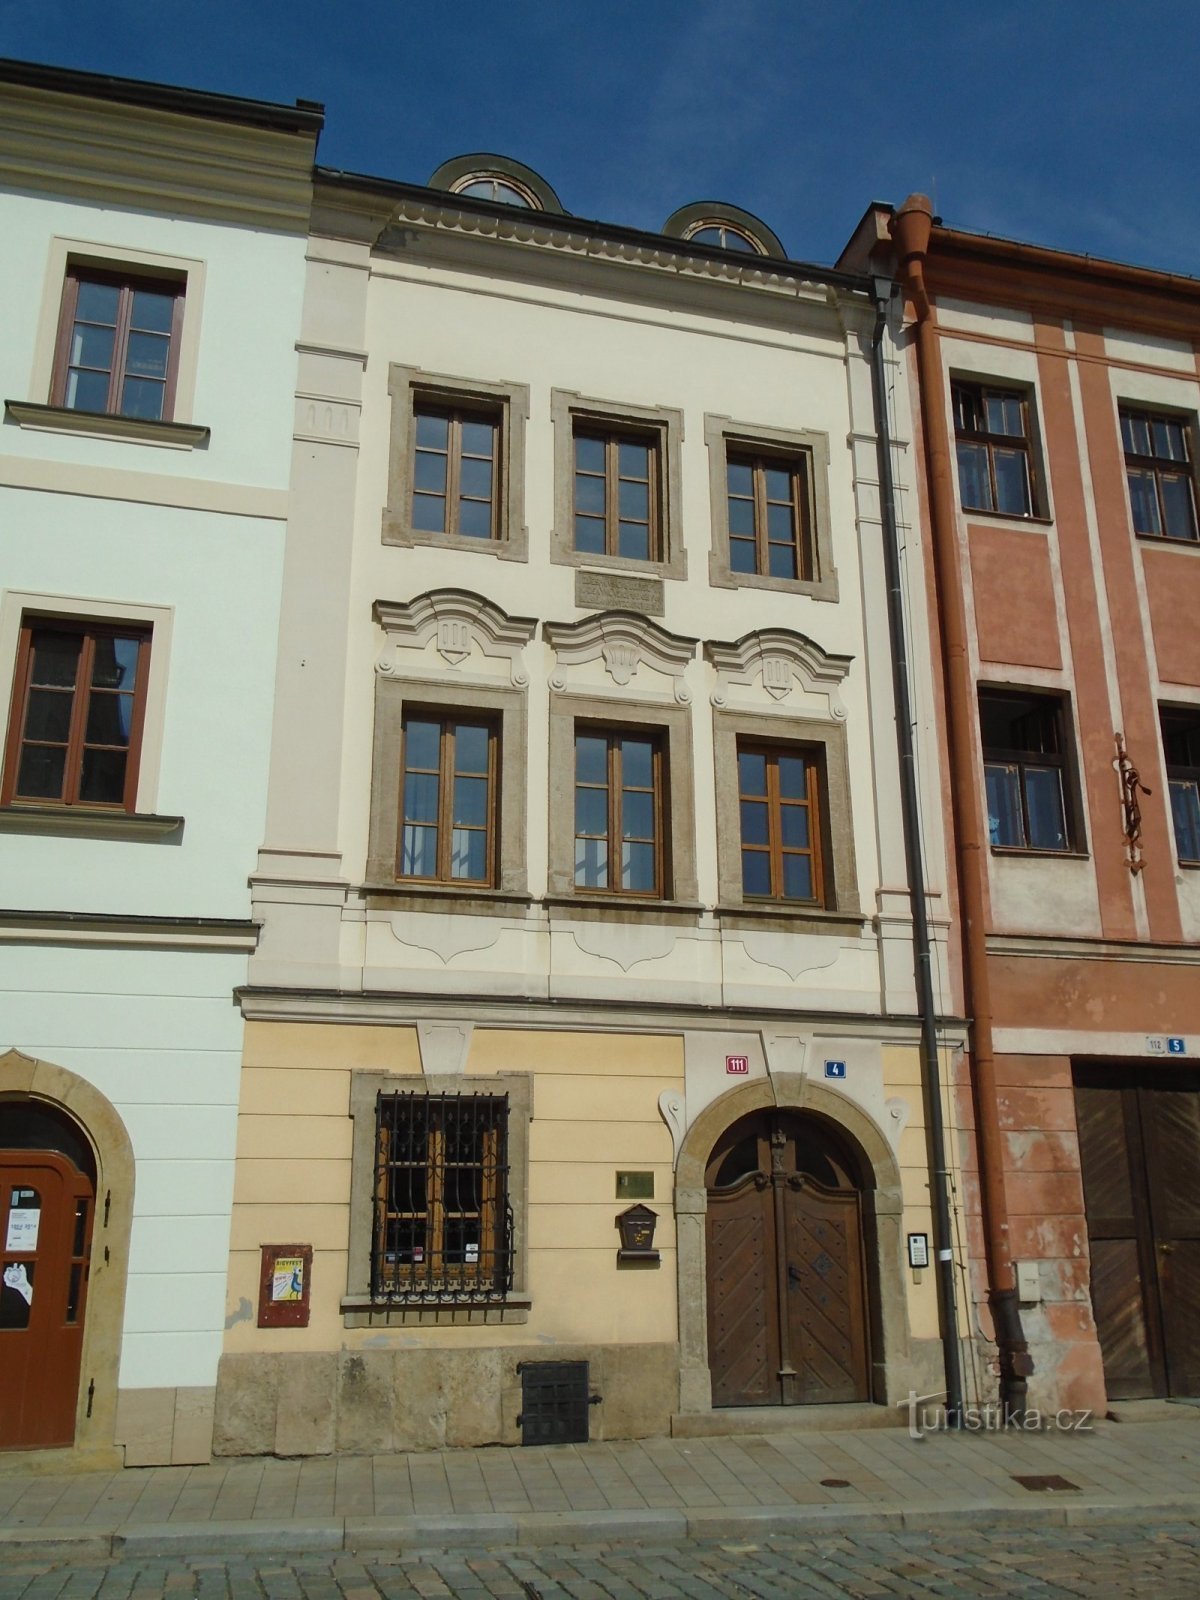 Malé náměstí nr. 111 (Hradec Králové, 16.9.2018. april XNUMX)